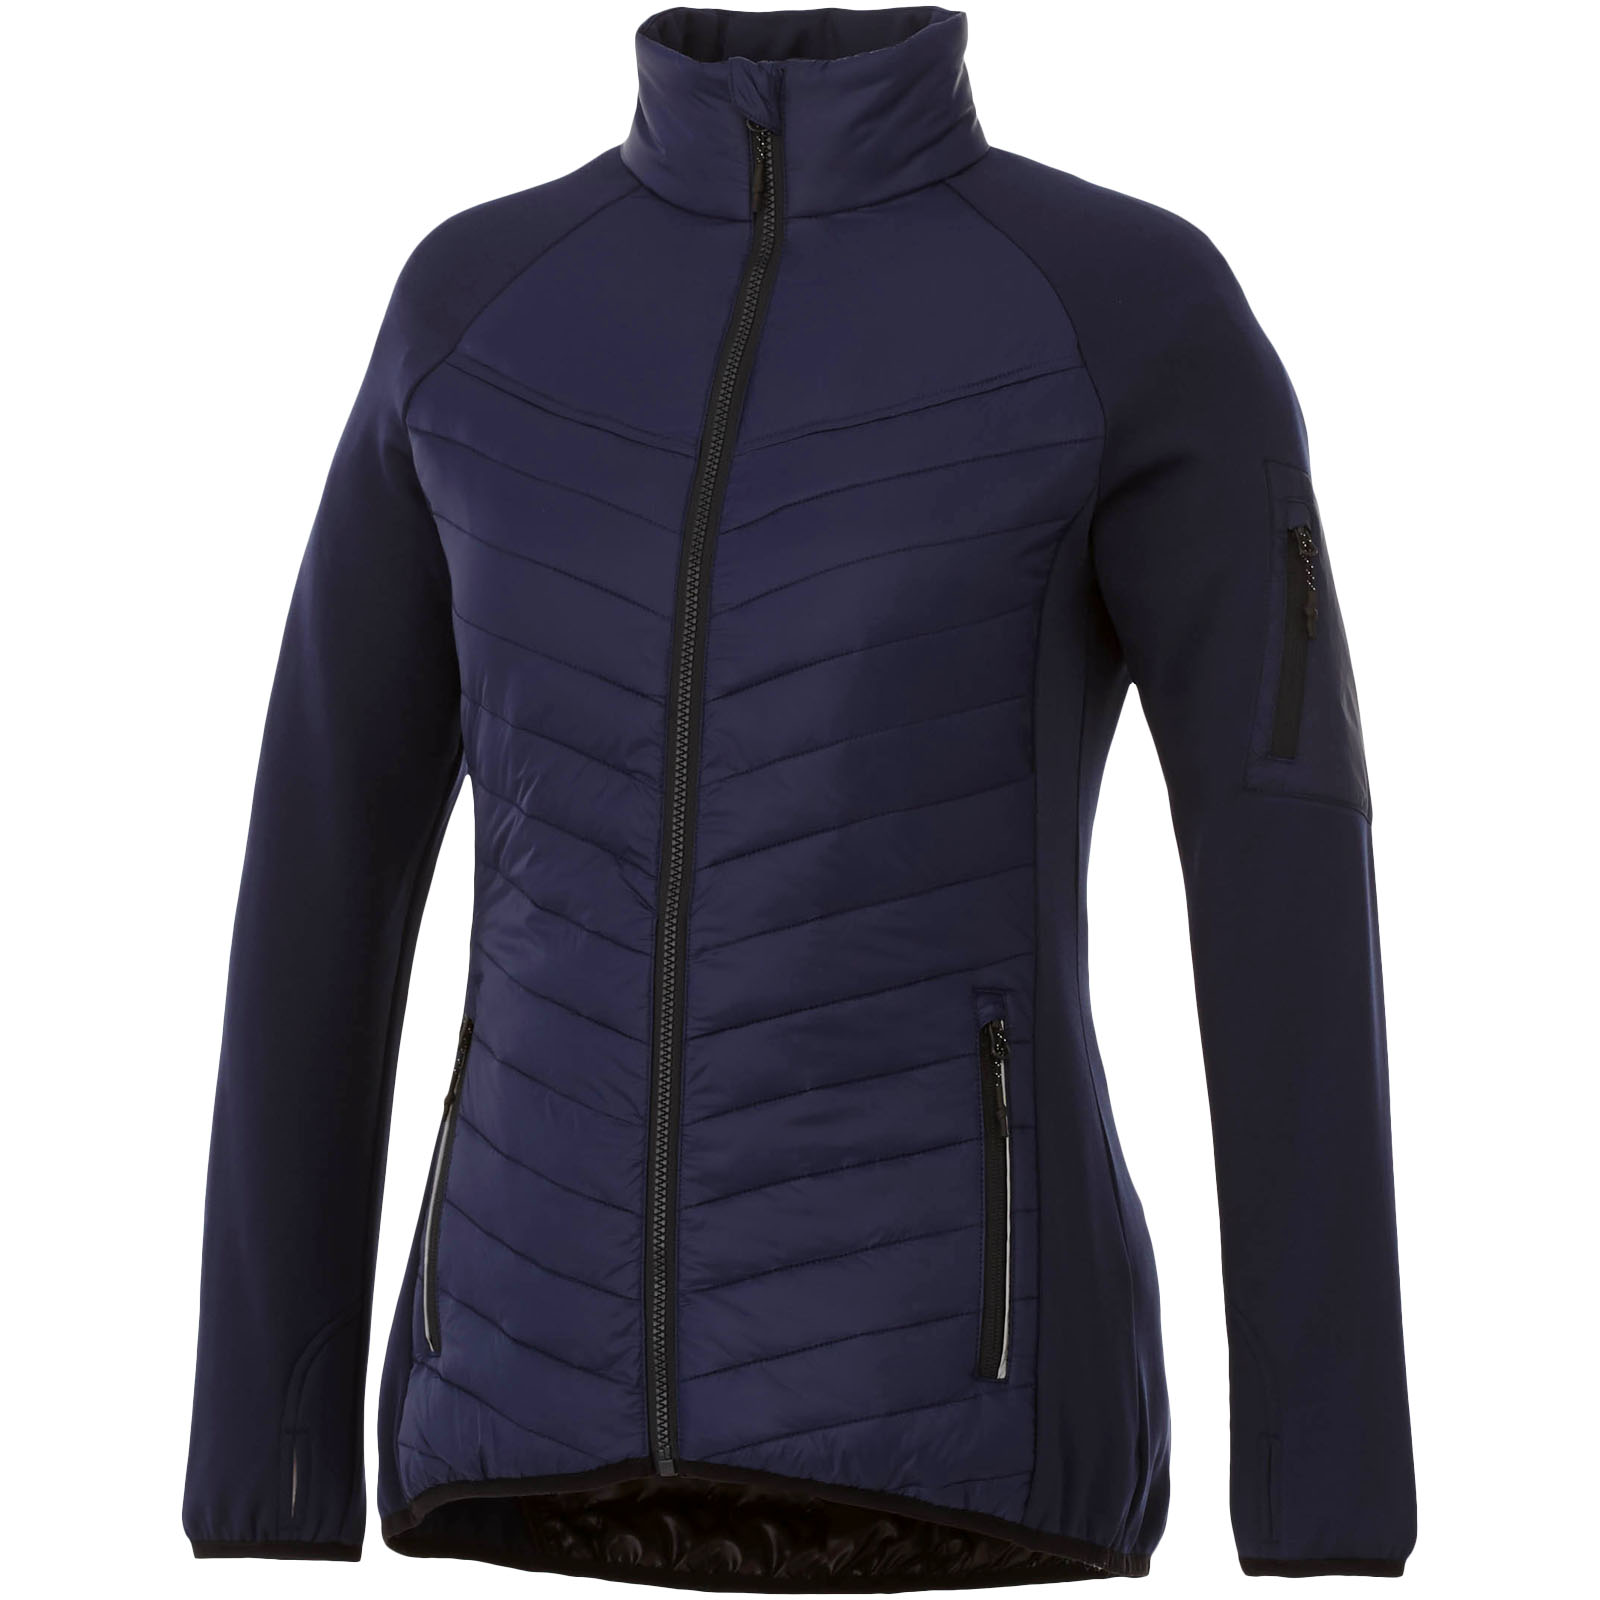 Clothing - Banff women's hybrid insulated jacket